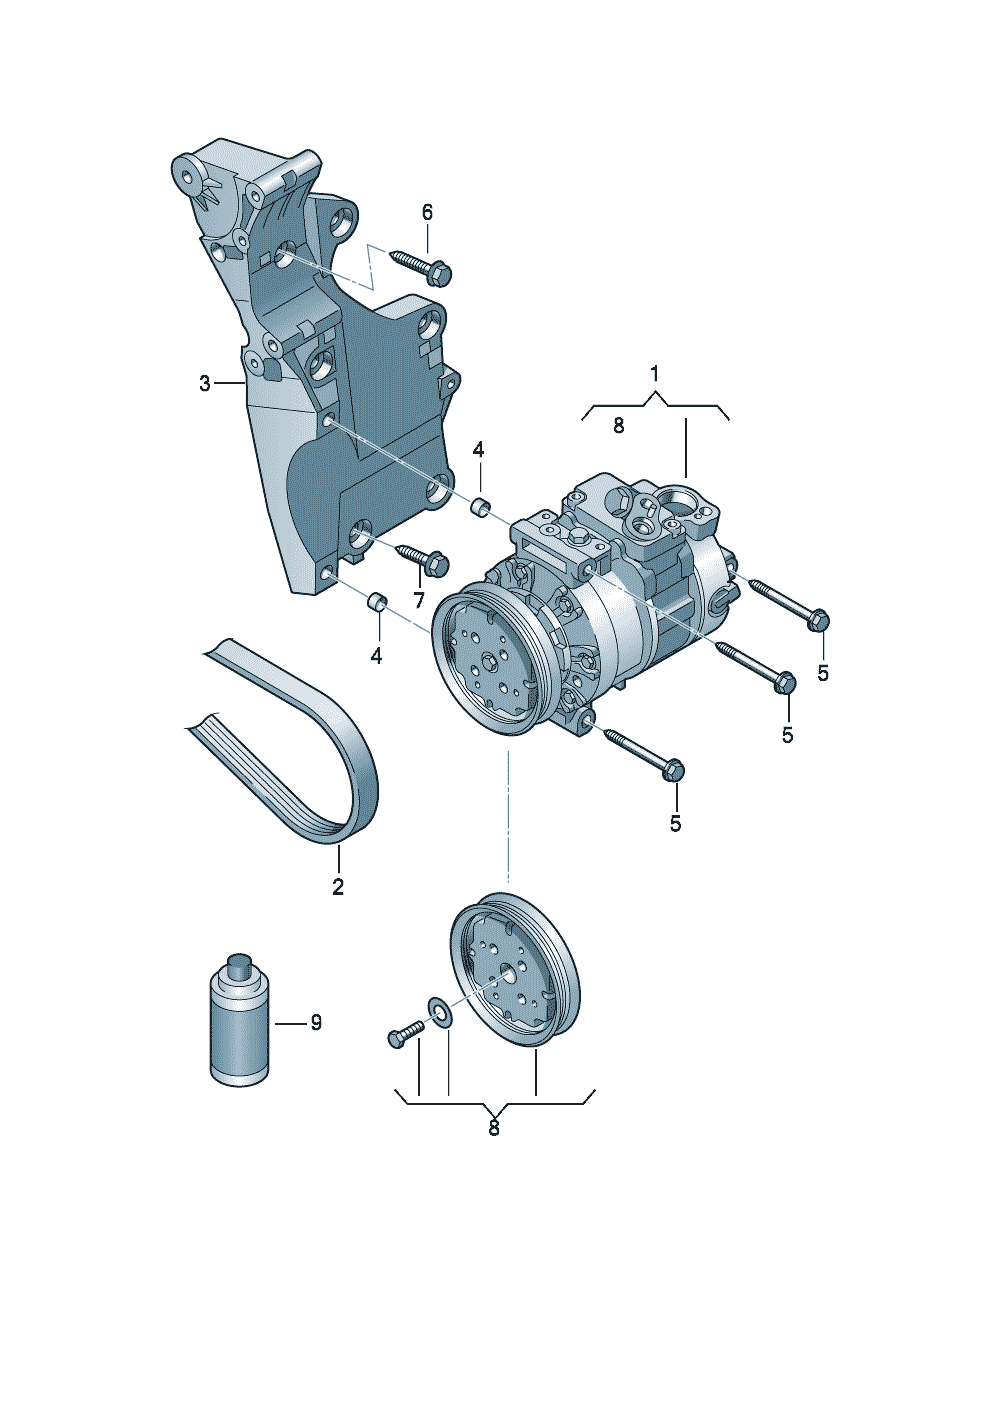 Aircocompressoraansluit- en bevestigings-<br>delen voor compressor  - Leon (SEAT) - le